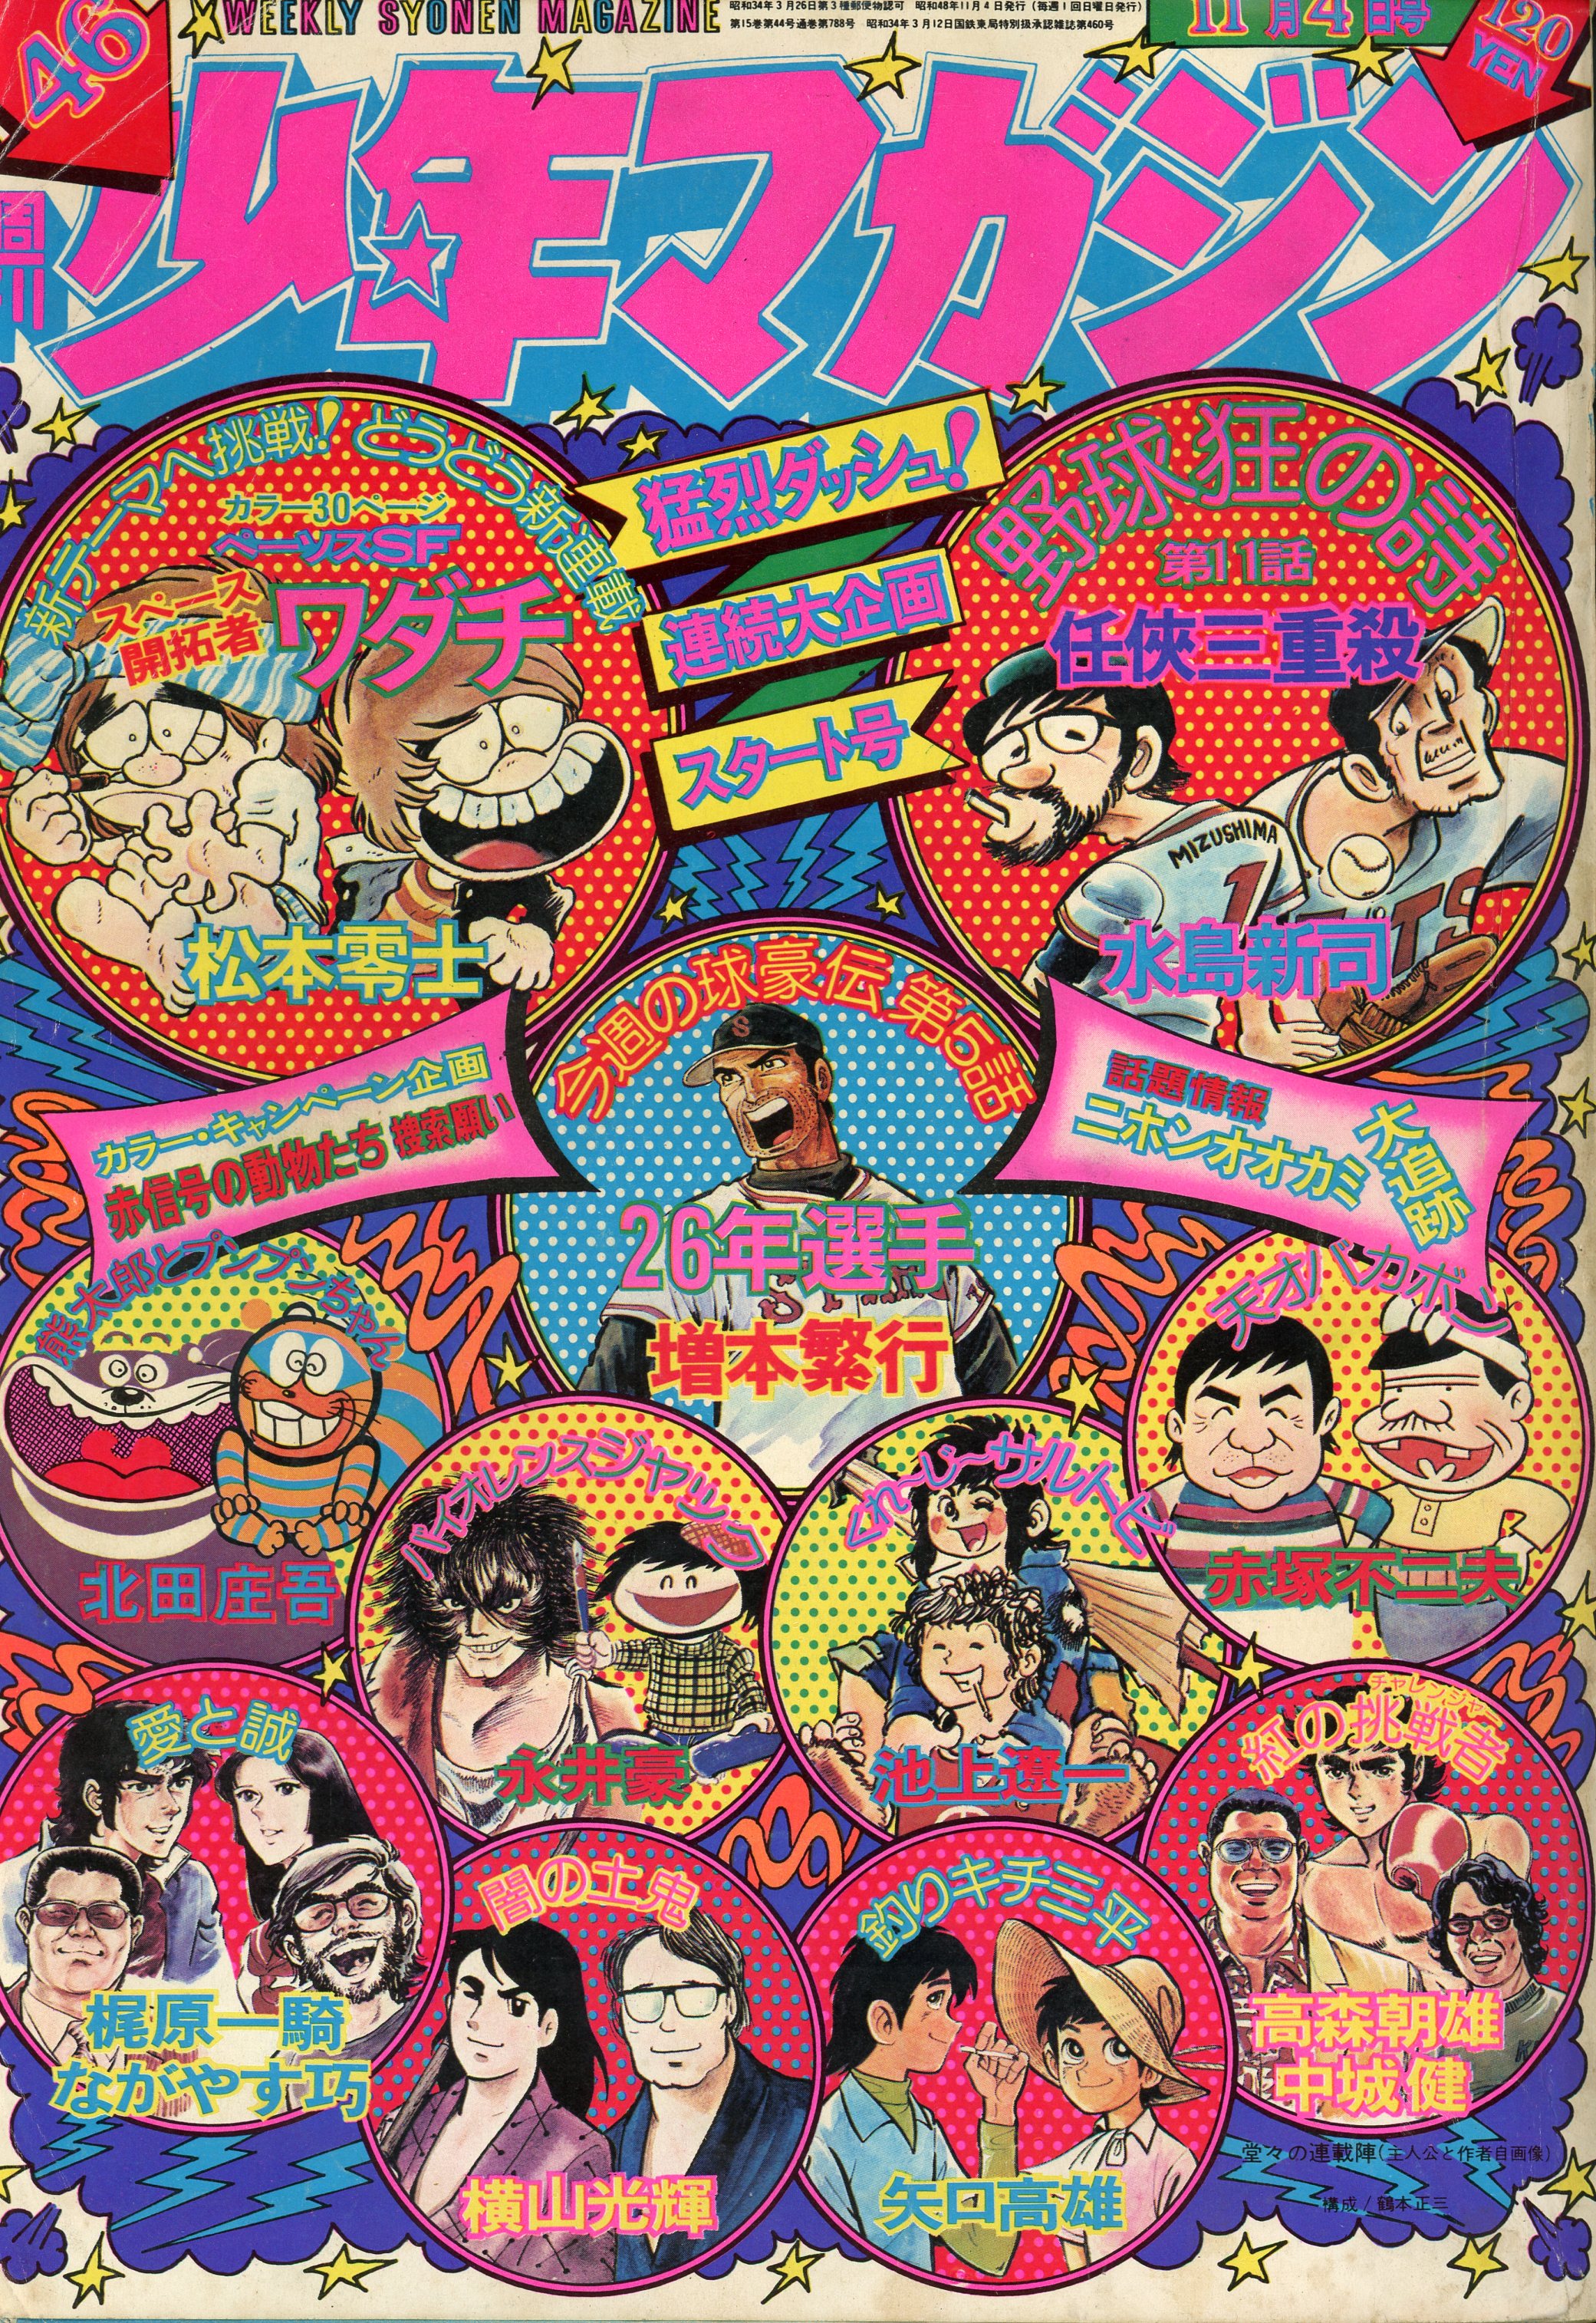 講談社 1973年(昭和48年)の漫画雑誌 週刊少年マガジン1973年(昭和48年 